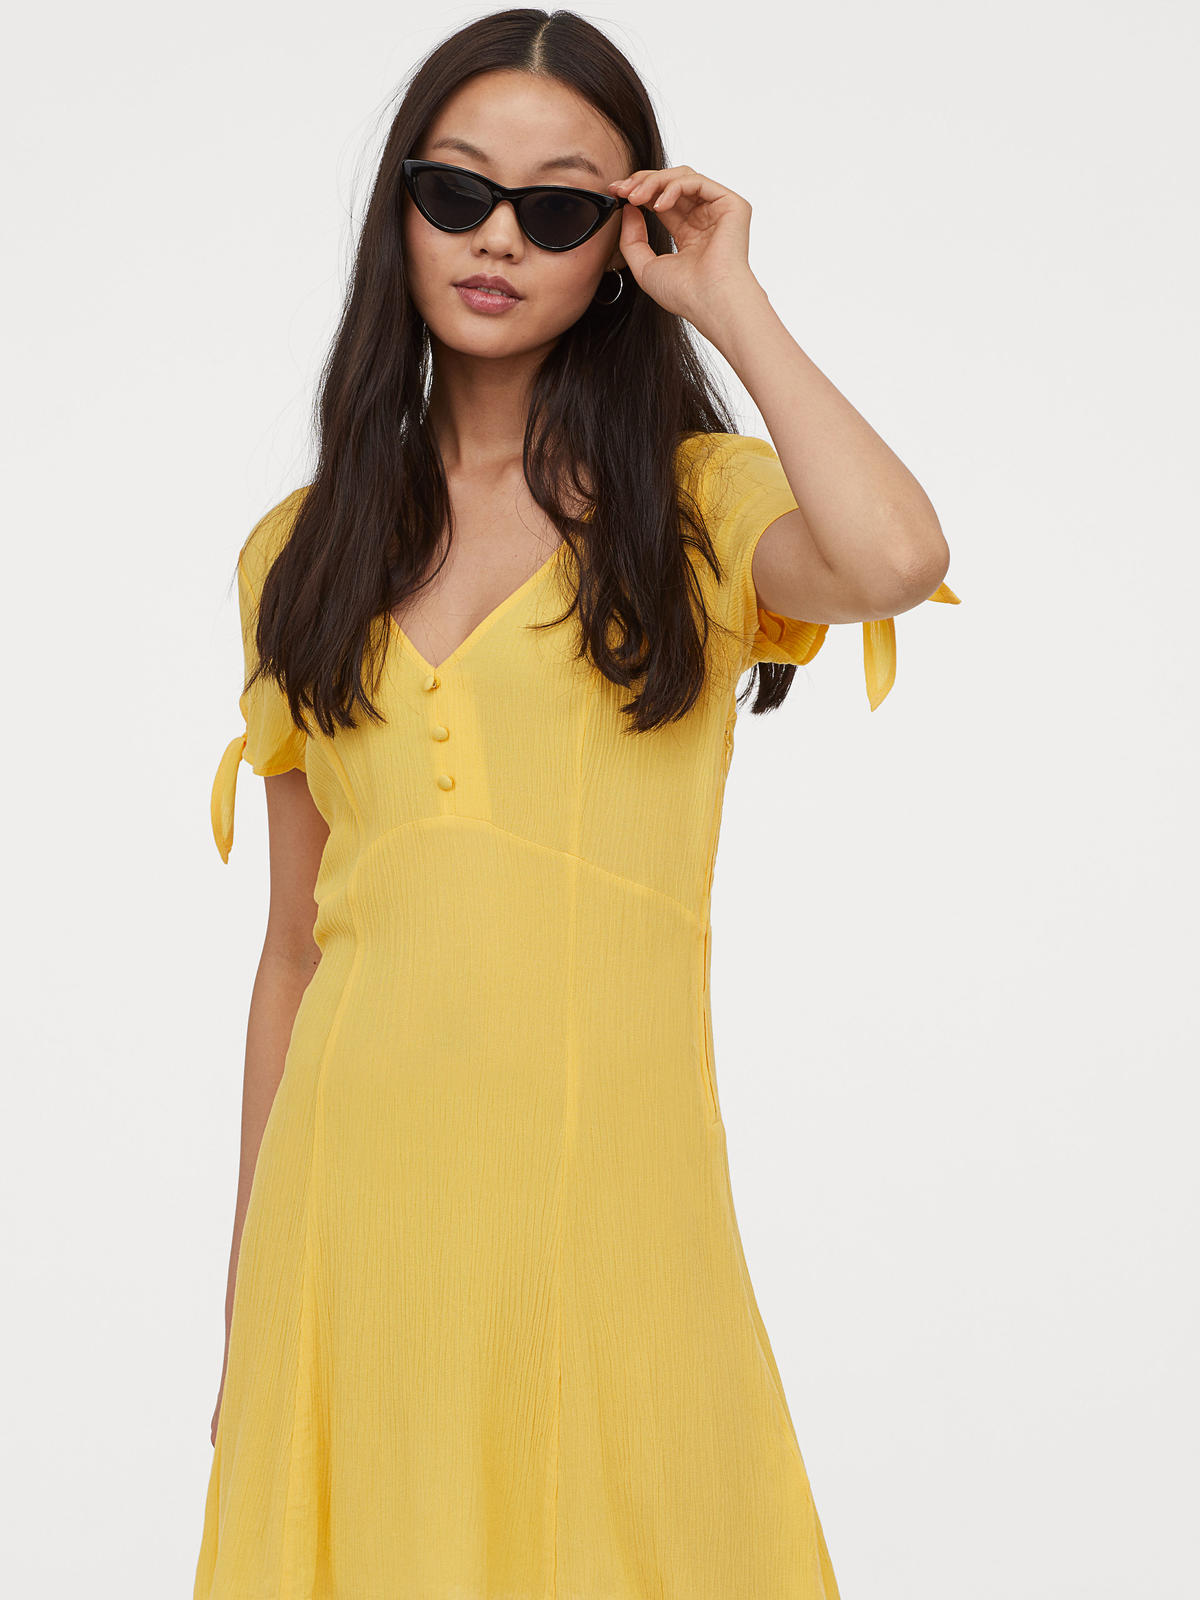 Sukienka żółta H&M - 49 zł (było 99 zł)